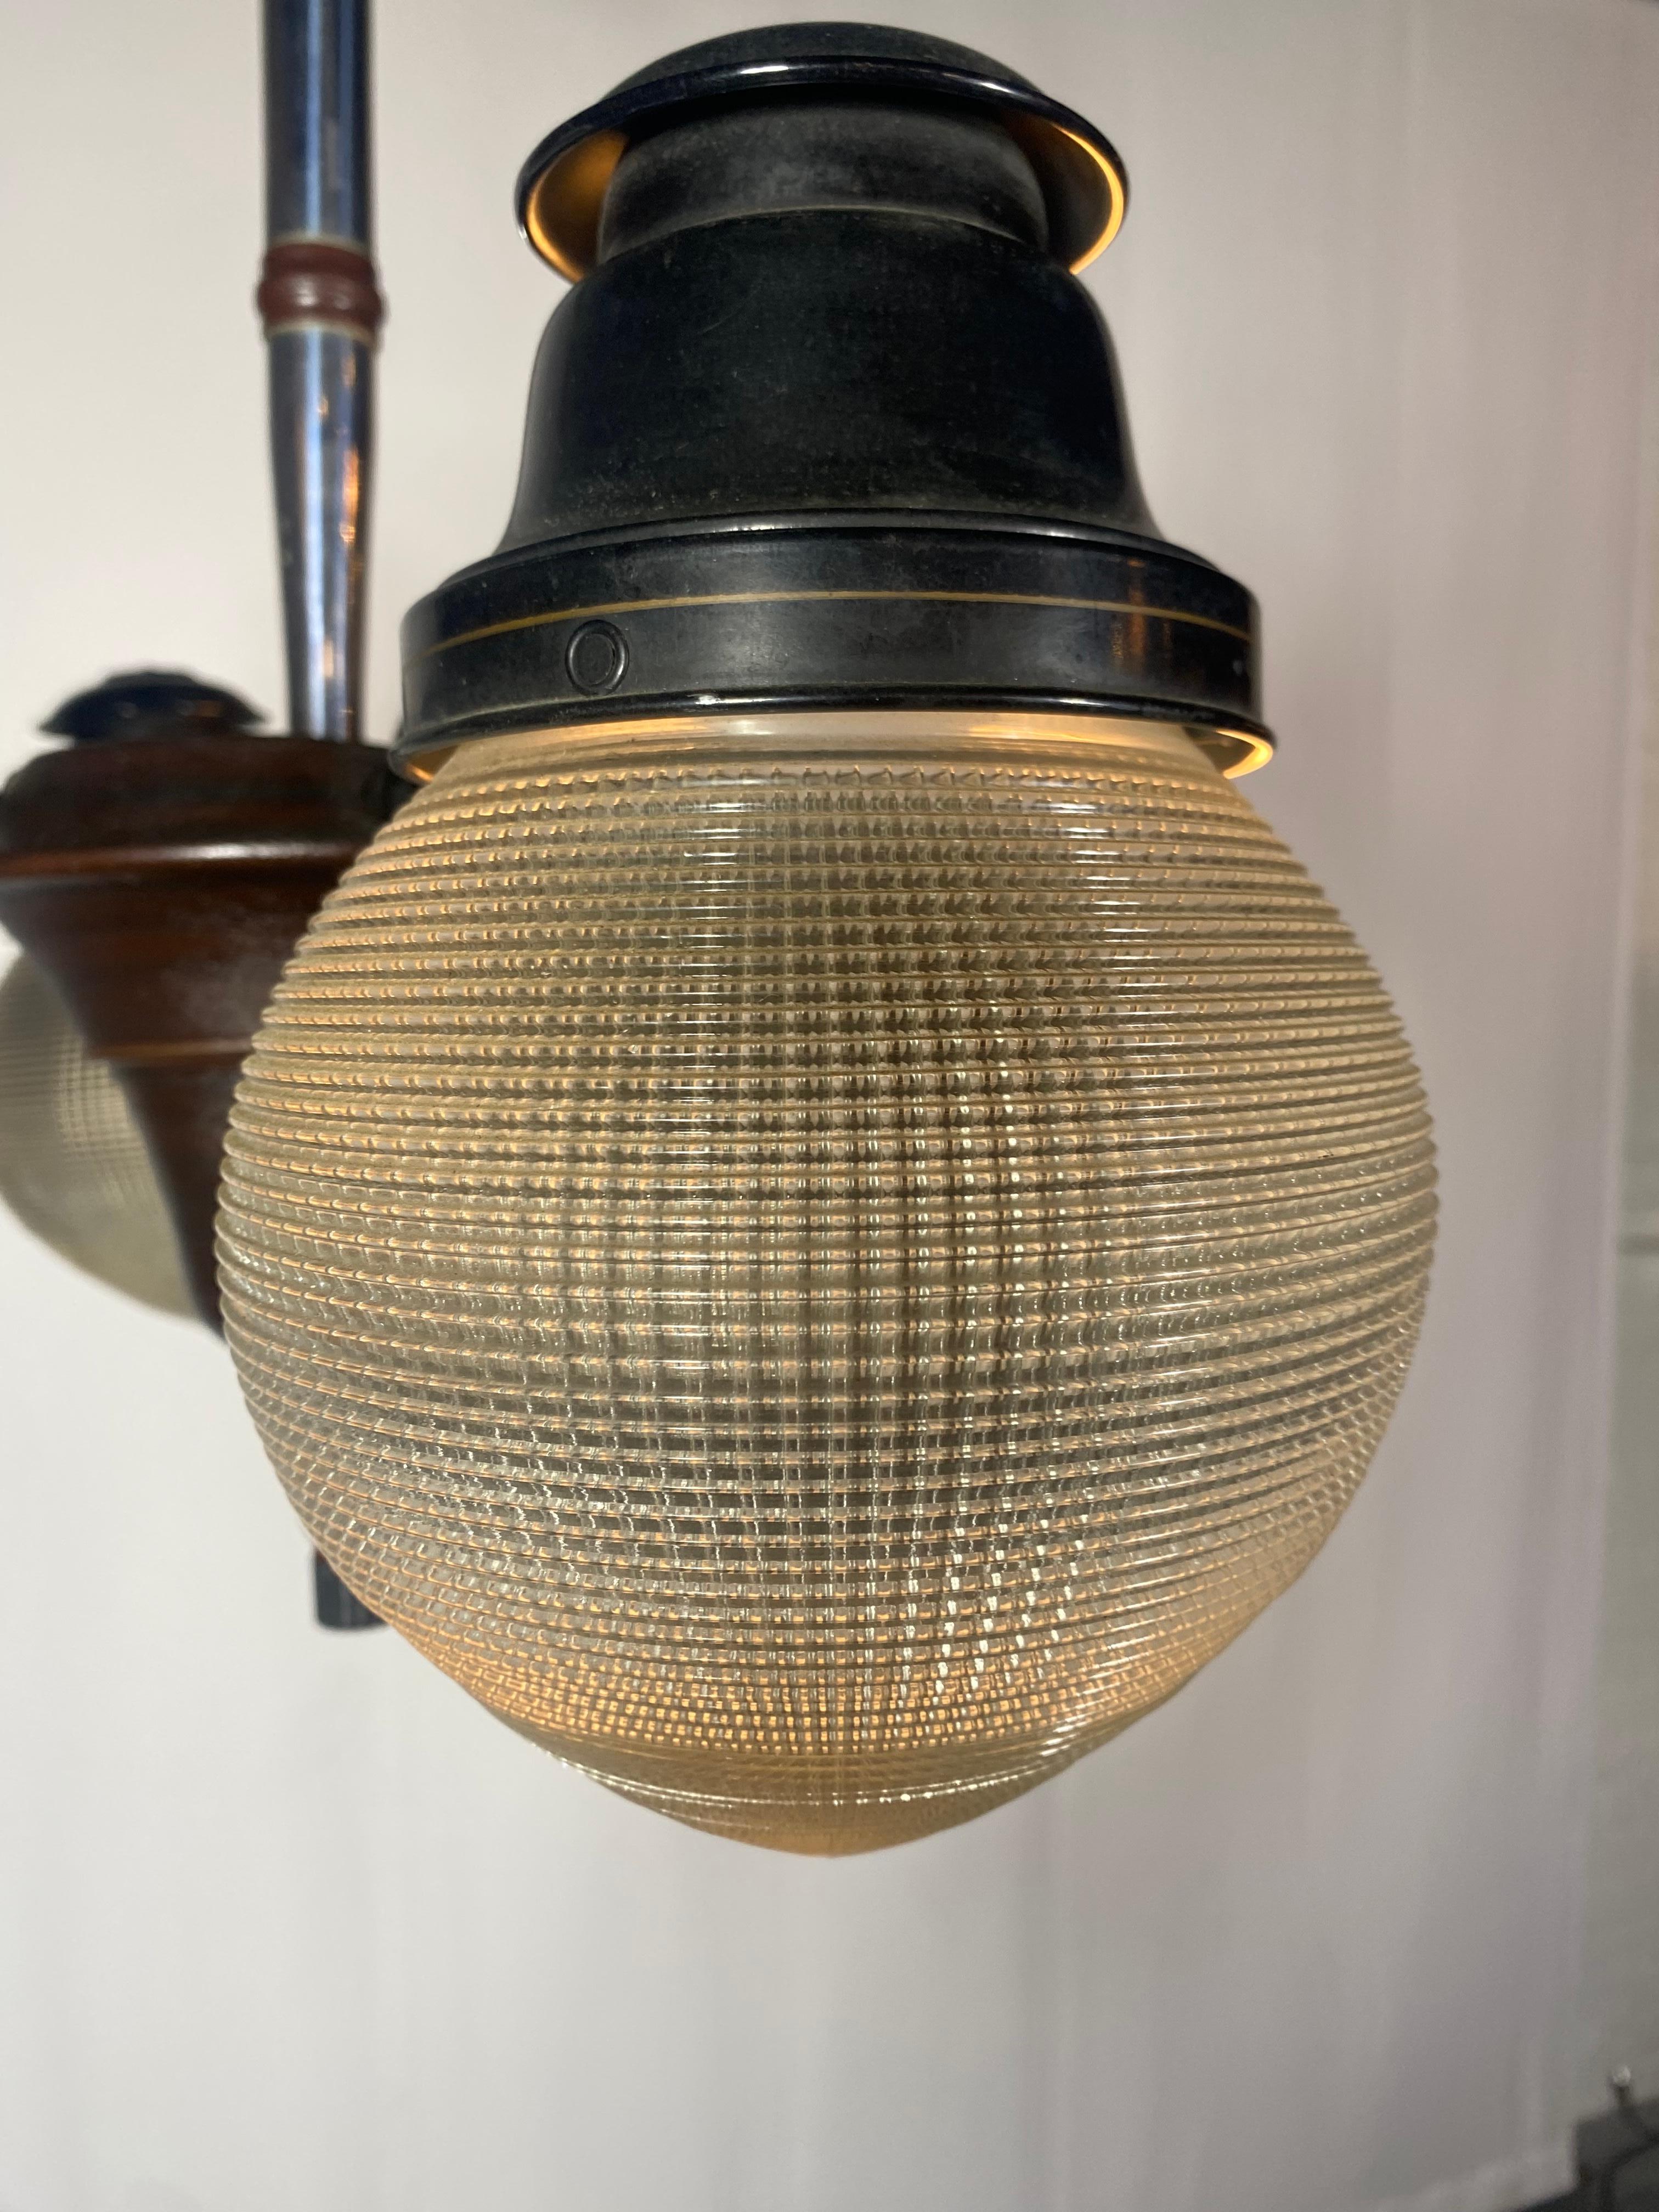 Schönes Beispiel für eine schöne Ritter Dental Lampe von 1920. Diese Leuchte verfügt über einen einzigartigen 4-Wege-Schalter, mit dem die Glühbirnen einzeln eingeschaltet werden können, um genau die richtige Lichtmenge zu erzeugen. Behält 4